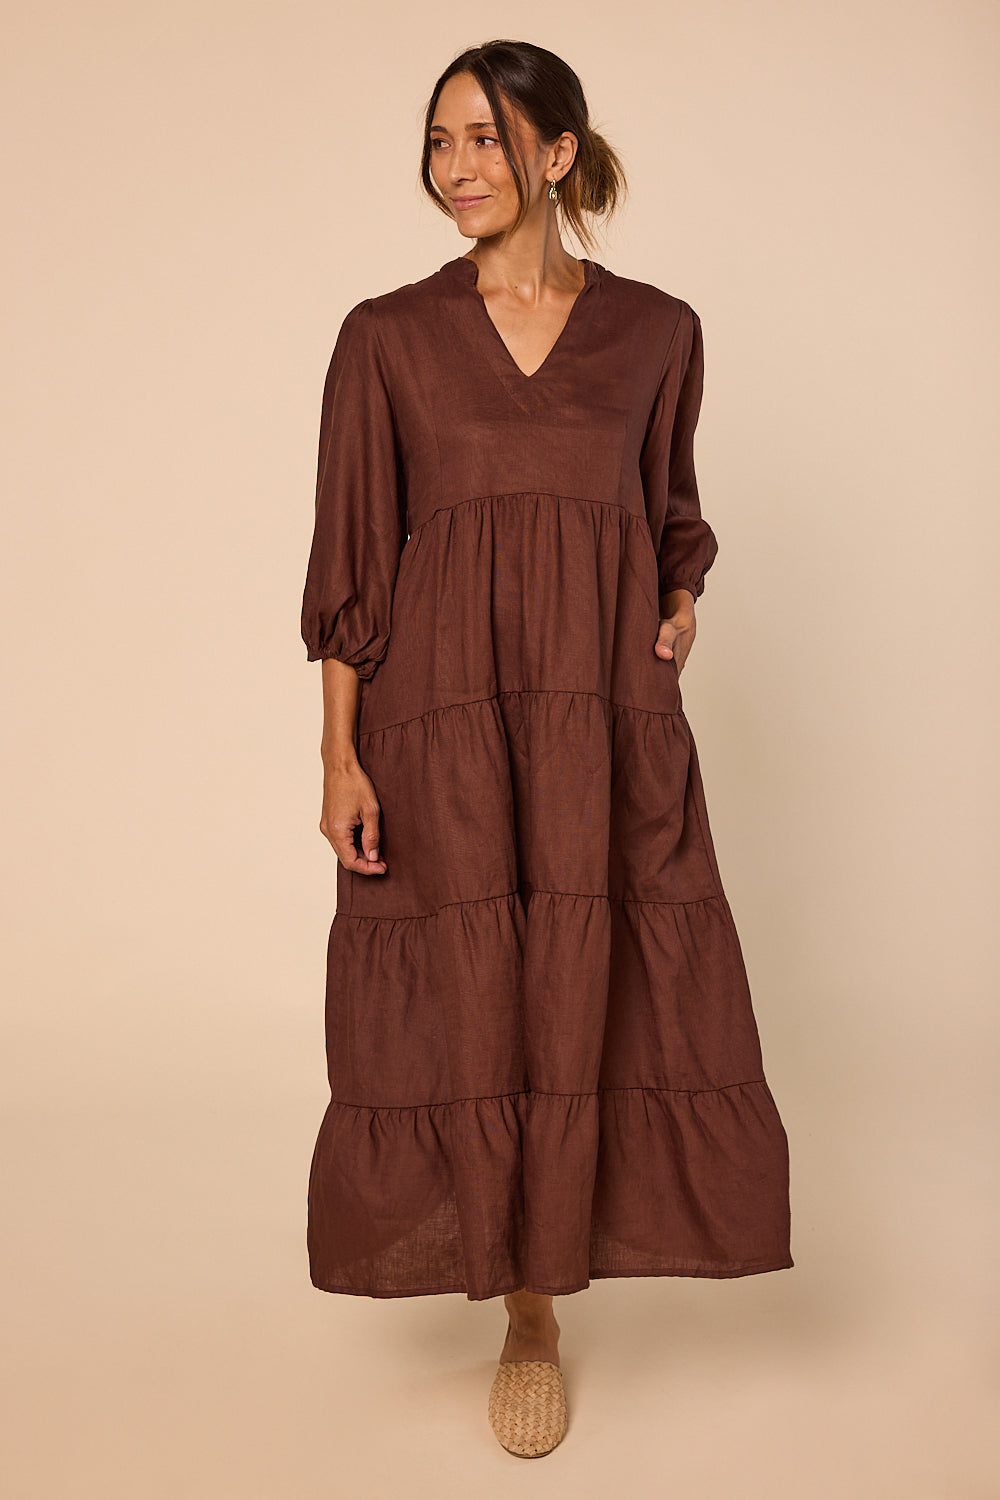 Sabre Linen V-Neck Dress in Raisin